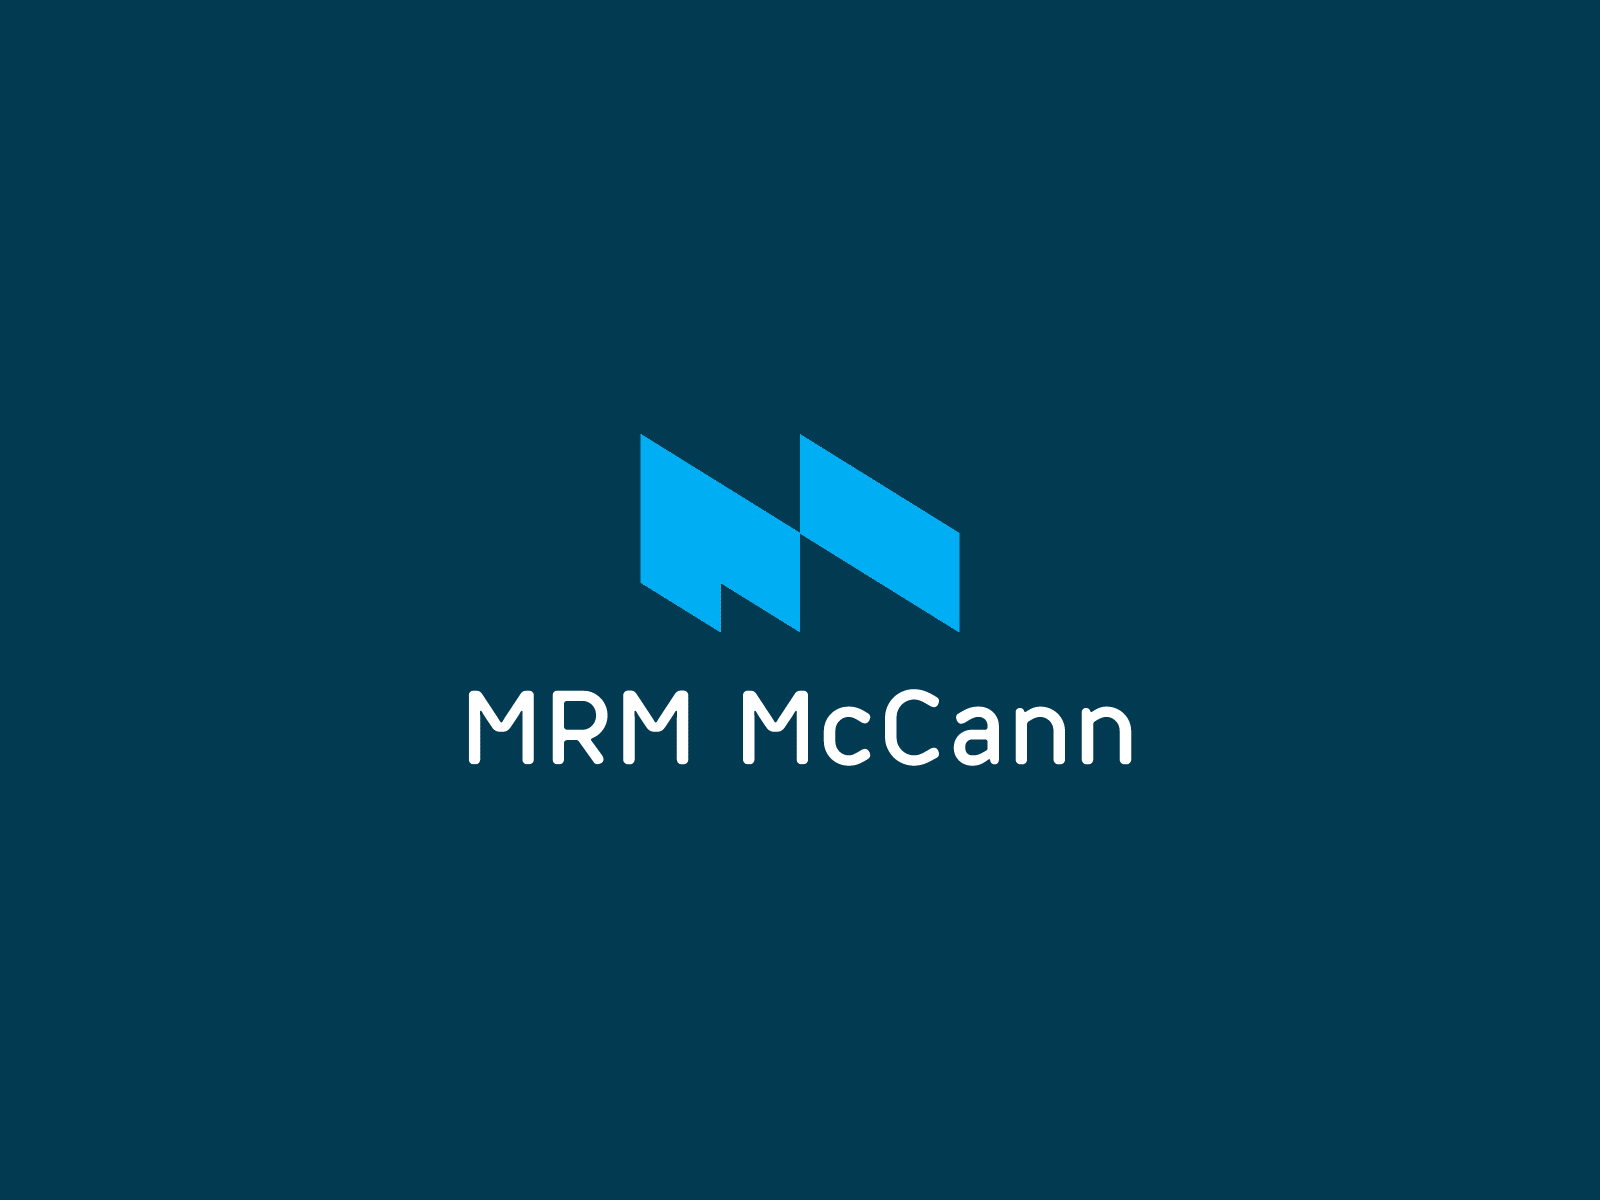 MRM McCann April Fools' Day Rebrand